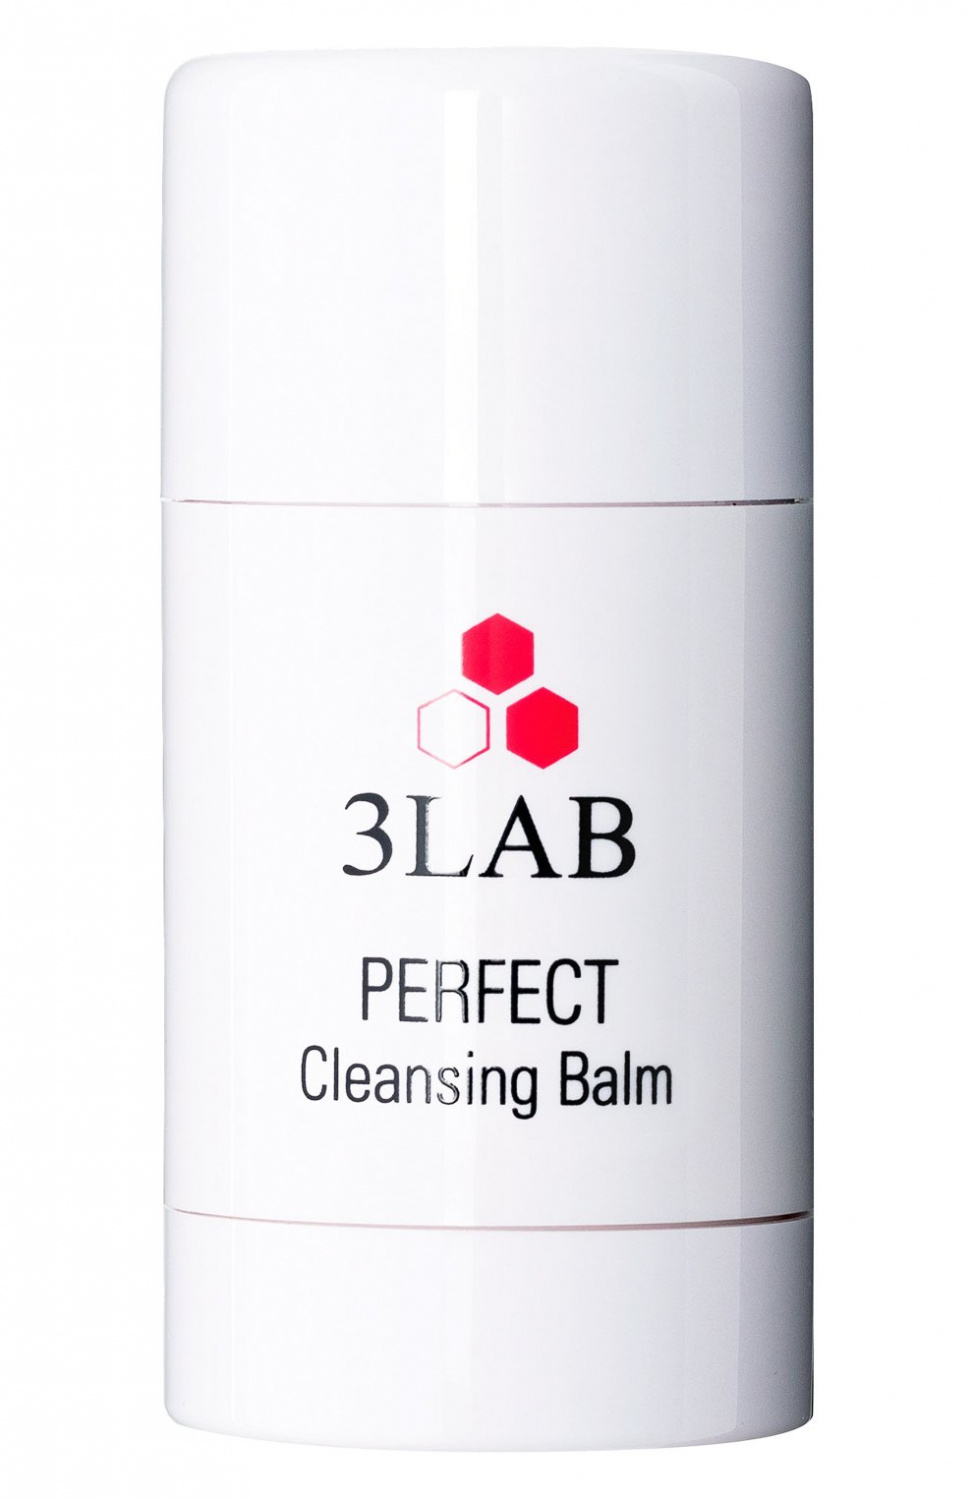 3LAB Perfect Cleansing Balm 35g - интернет-магазин профессиональной косметики Spadream, изображение 37295